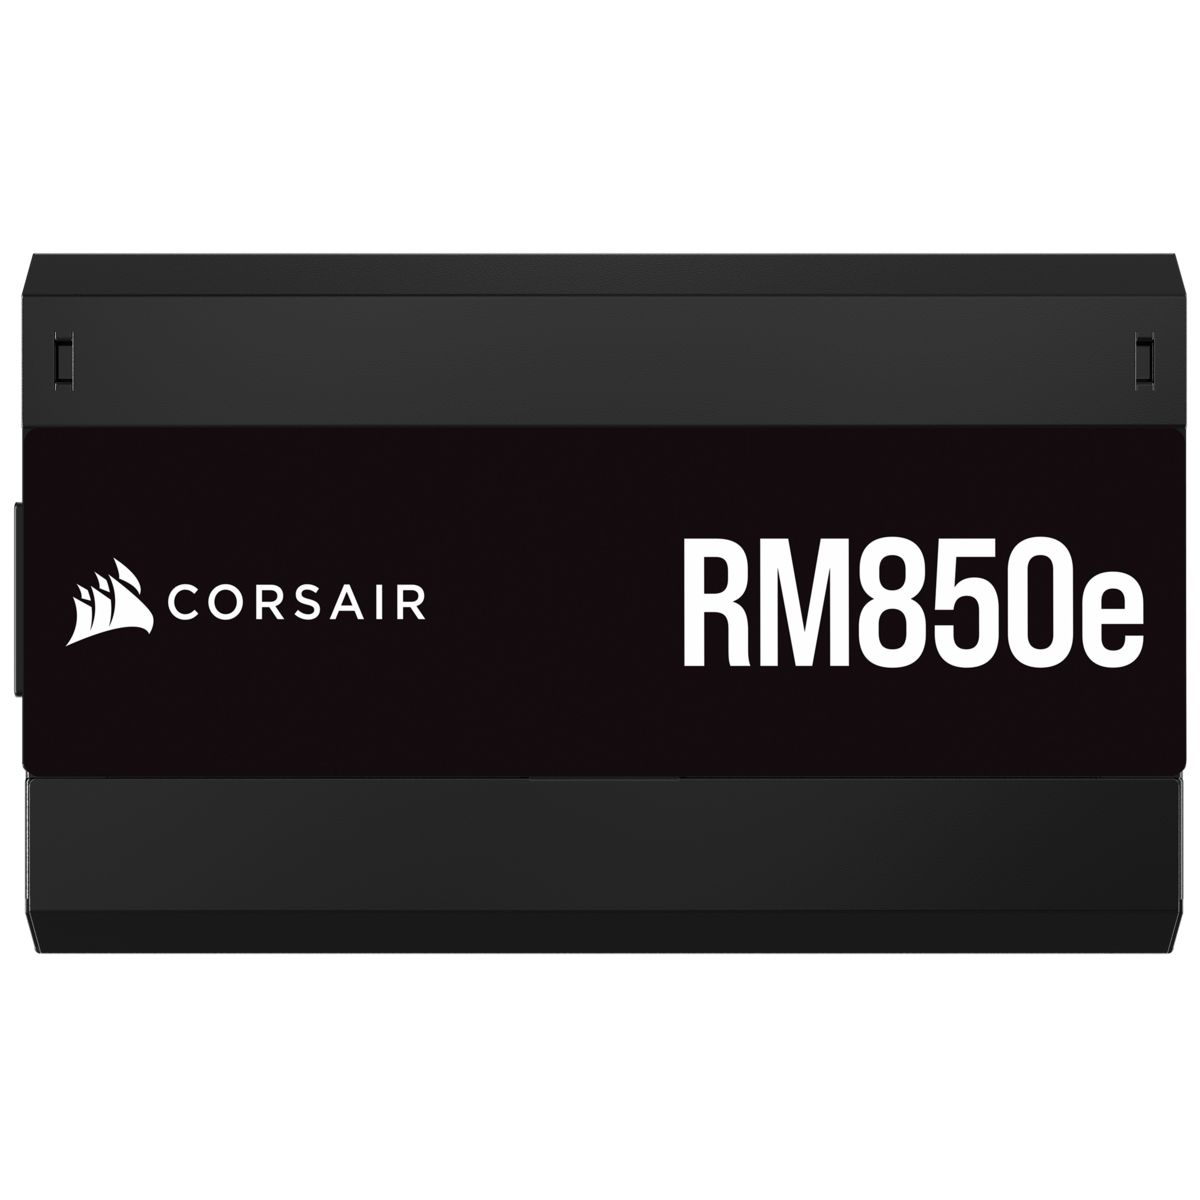 Corsair - Fuente Alimentación Modular Corsair RMe Series RM850e 850W 80 Plus Gold ATX3.0